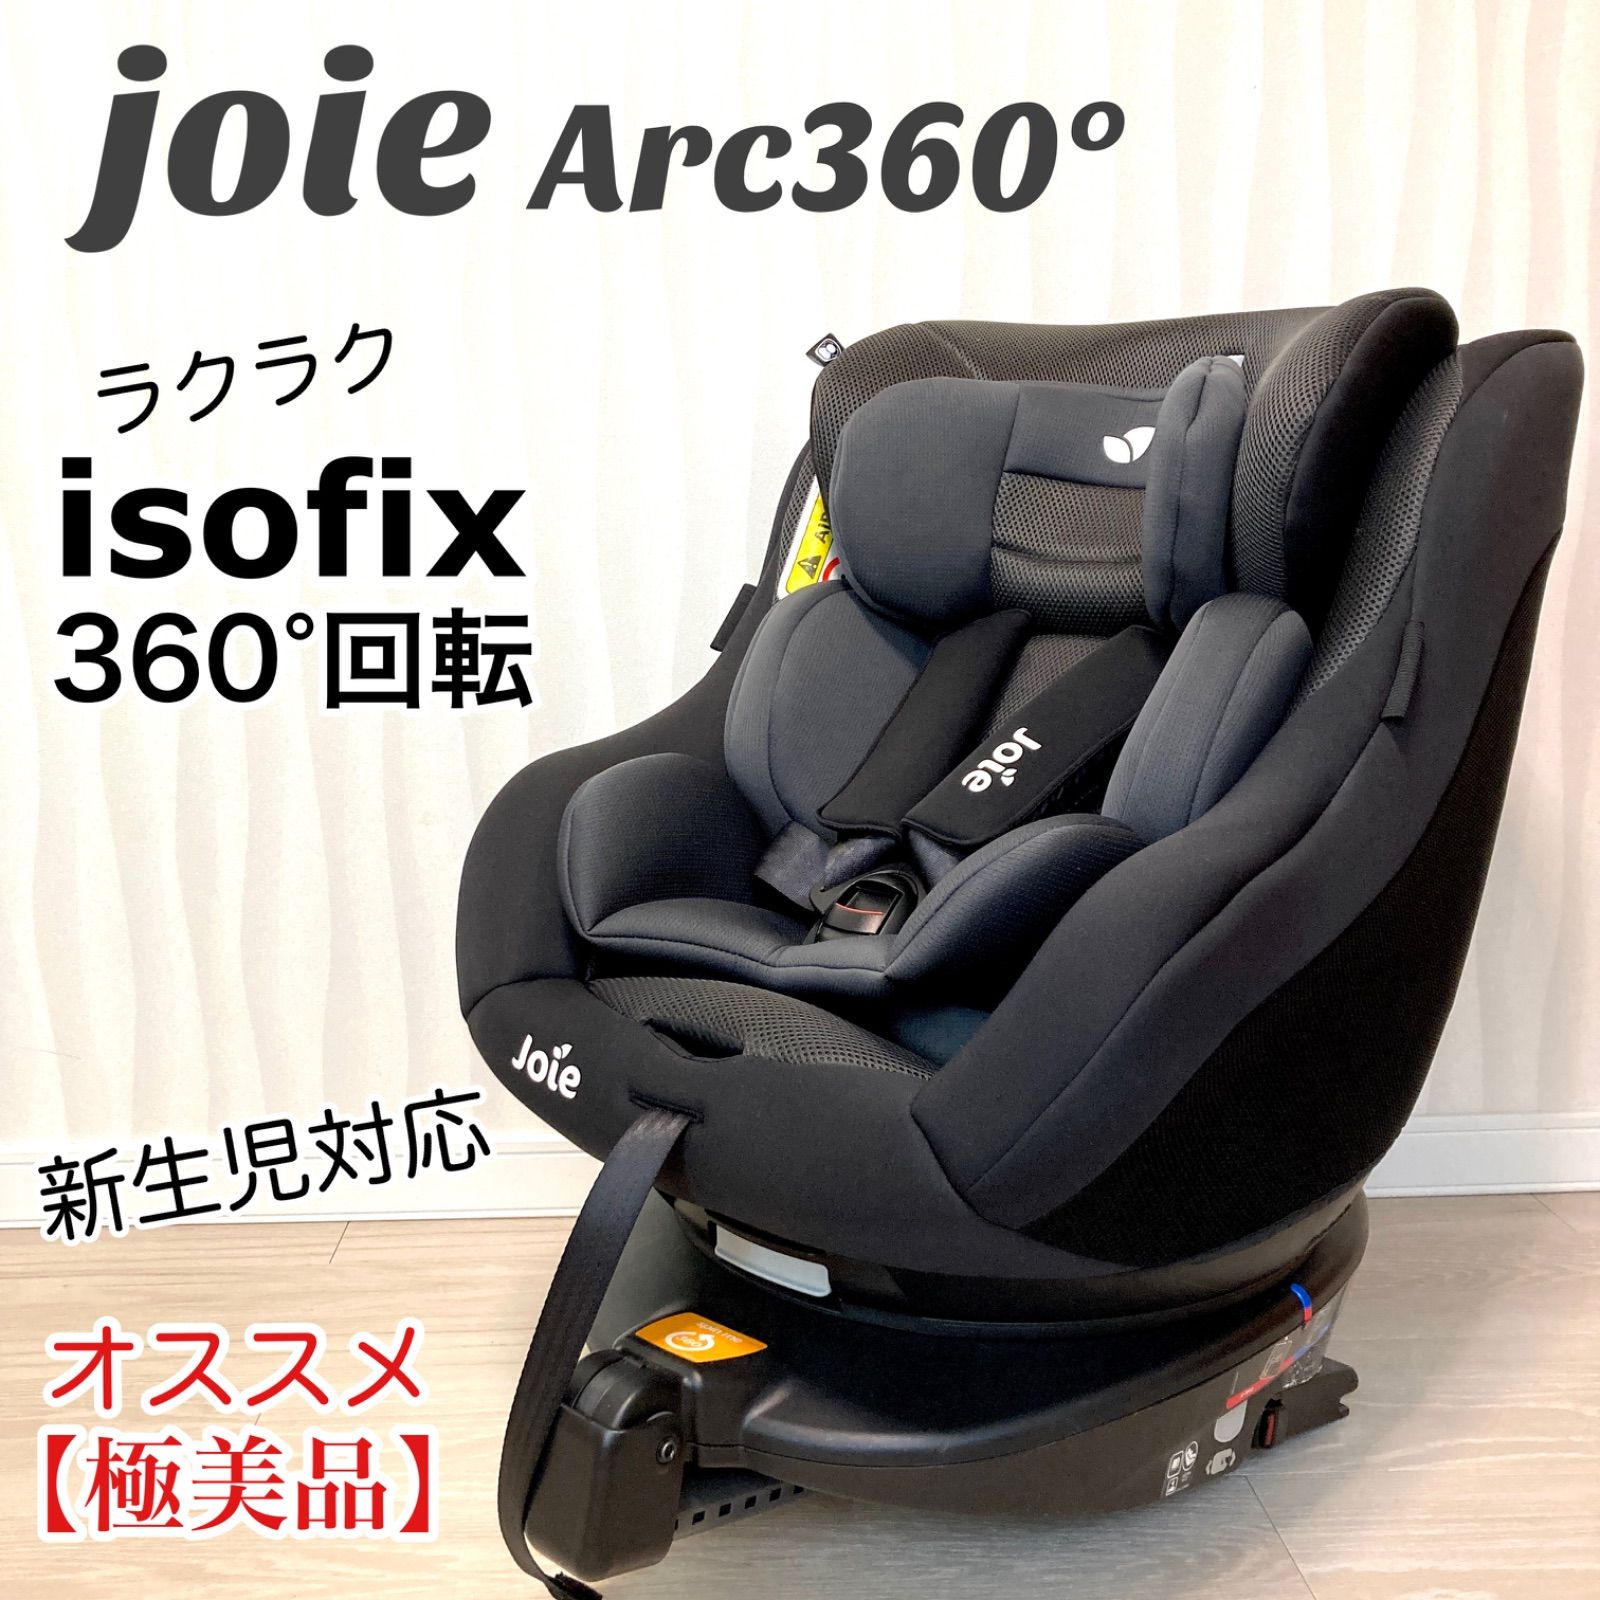 ジョイー(joie) チャイルドシート アーク Arc360° ISOFIX専用